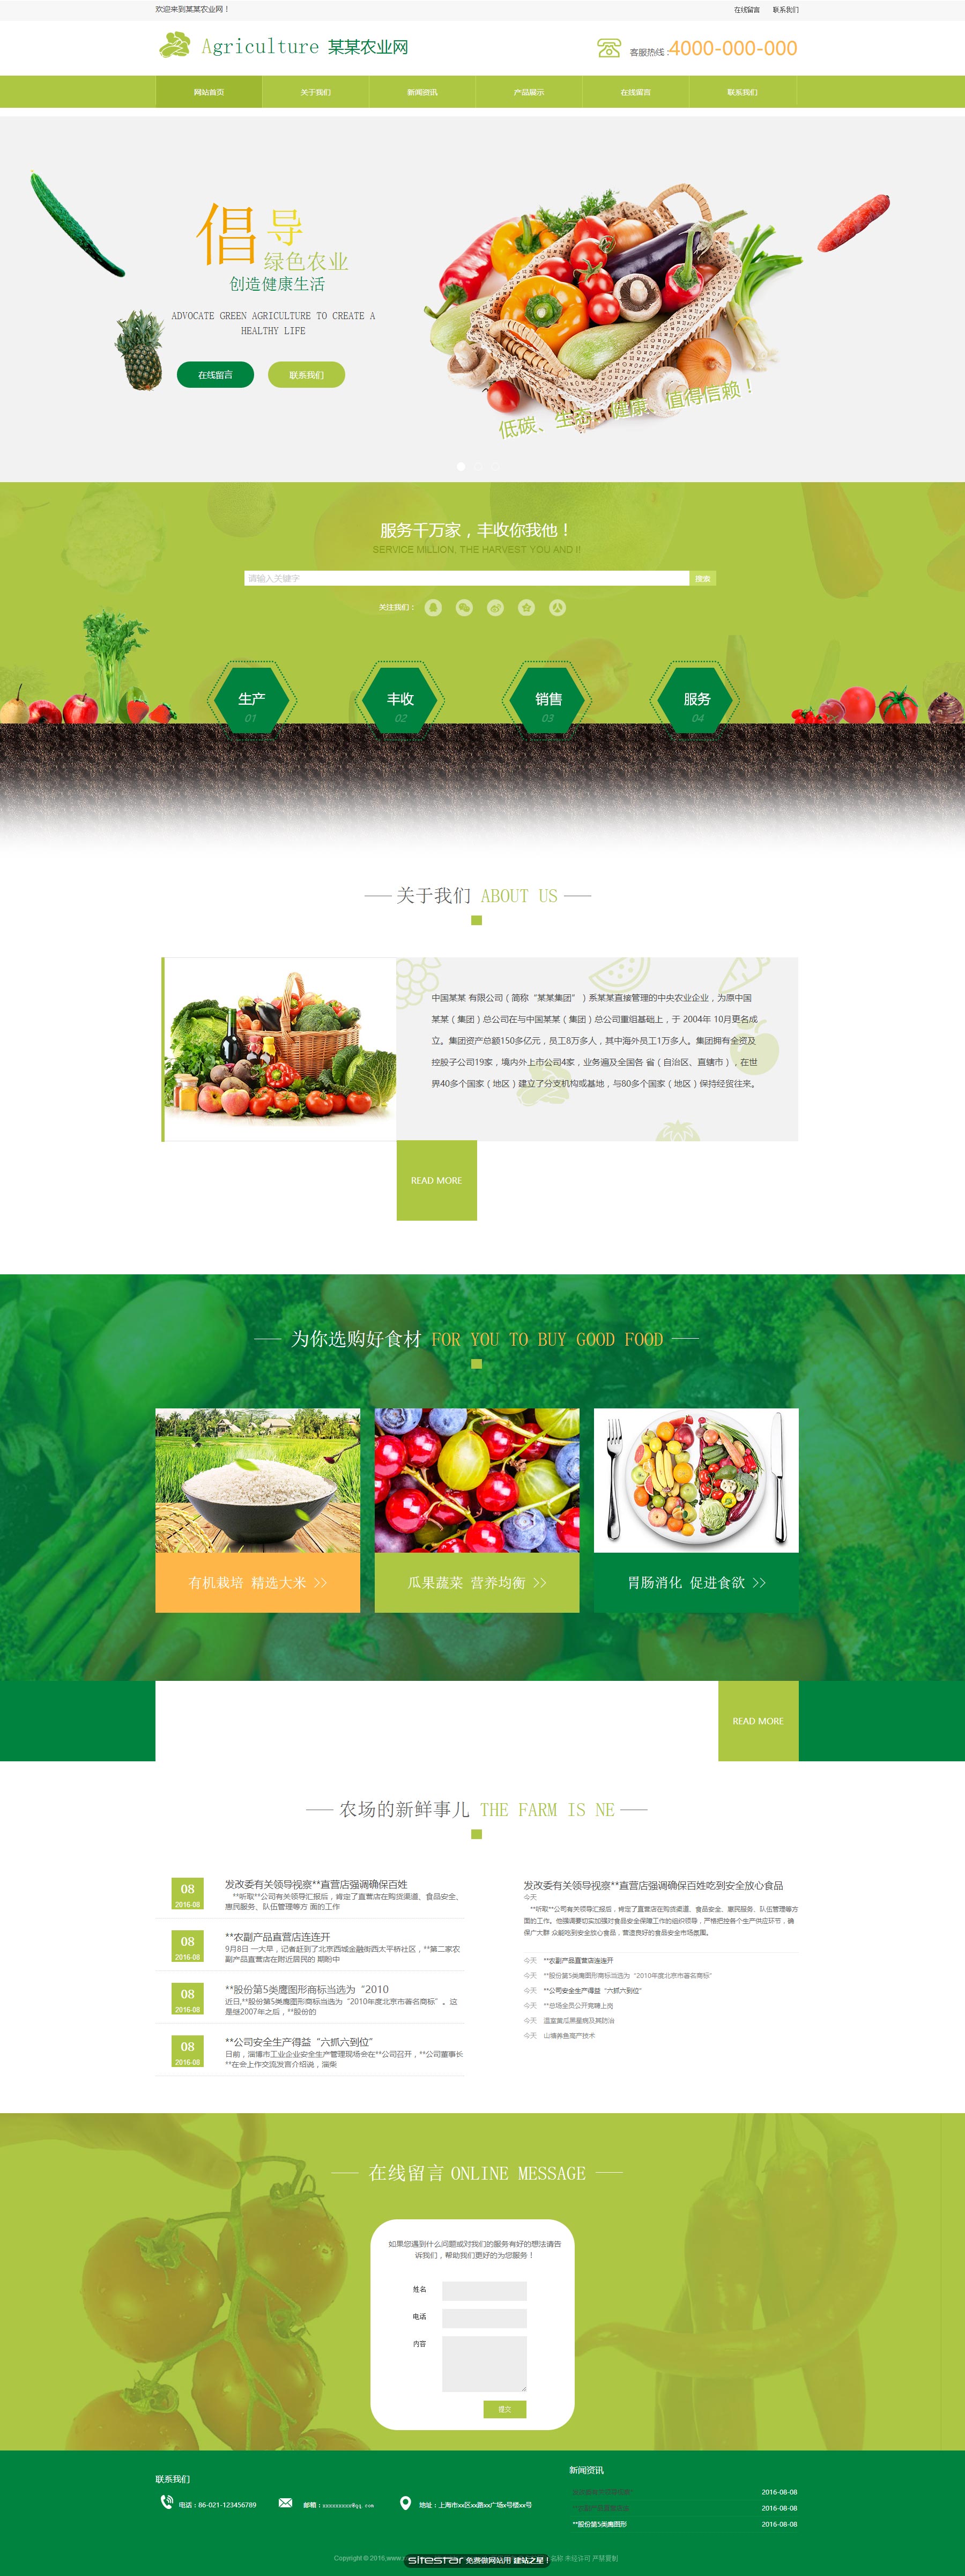 企业网站精美模板-agriculture-58